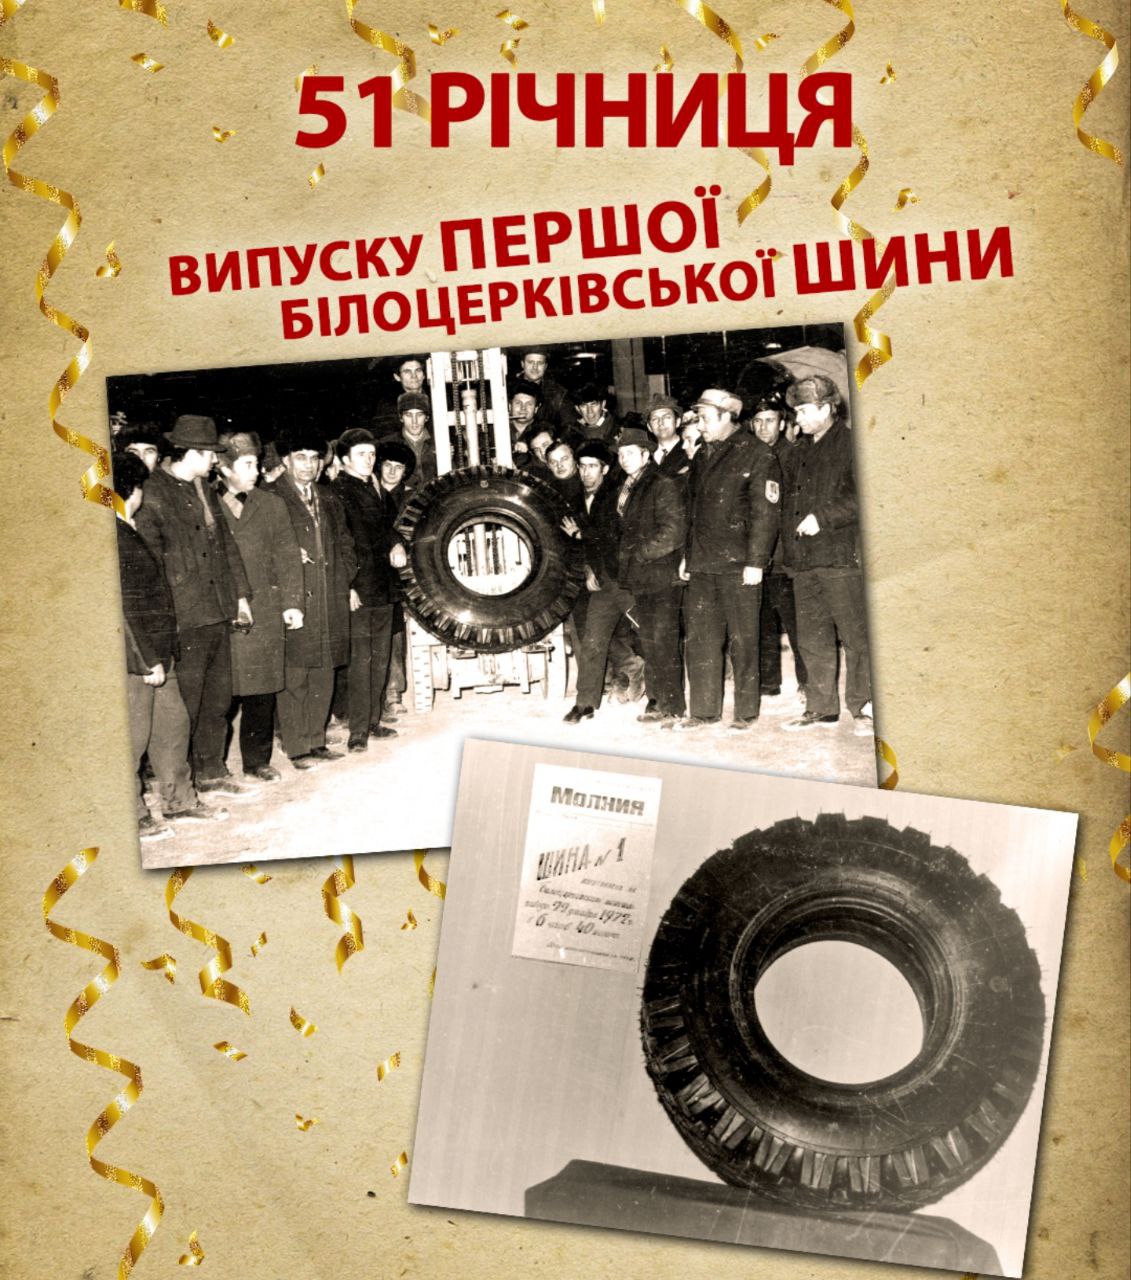 51 рік з моменту виготовлення першої білоцерківської шини